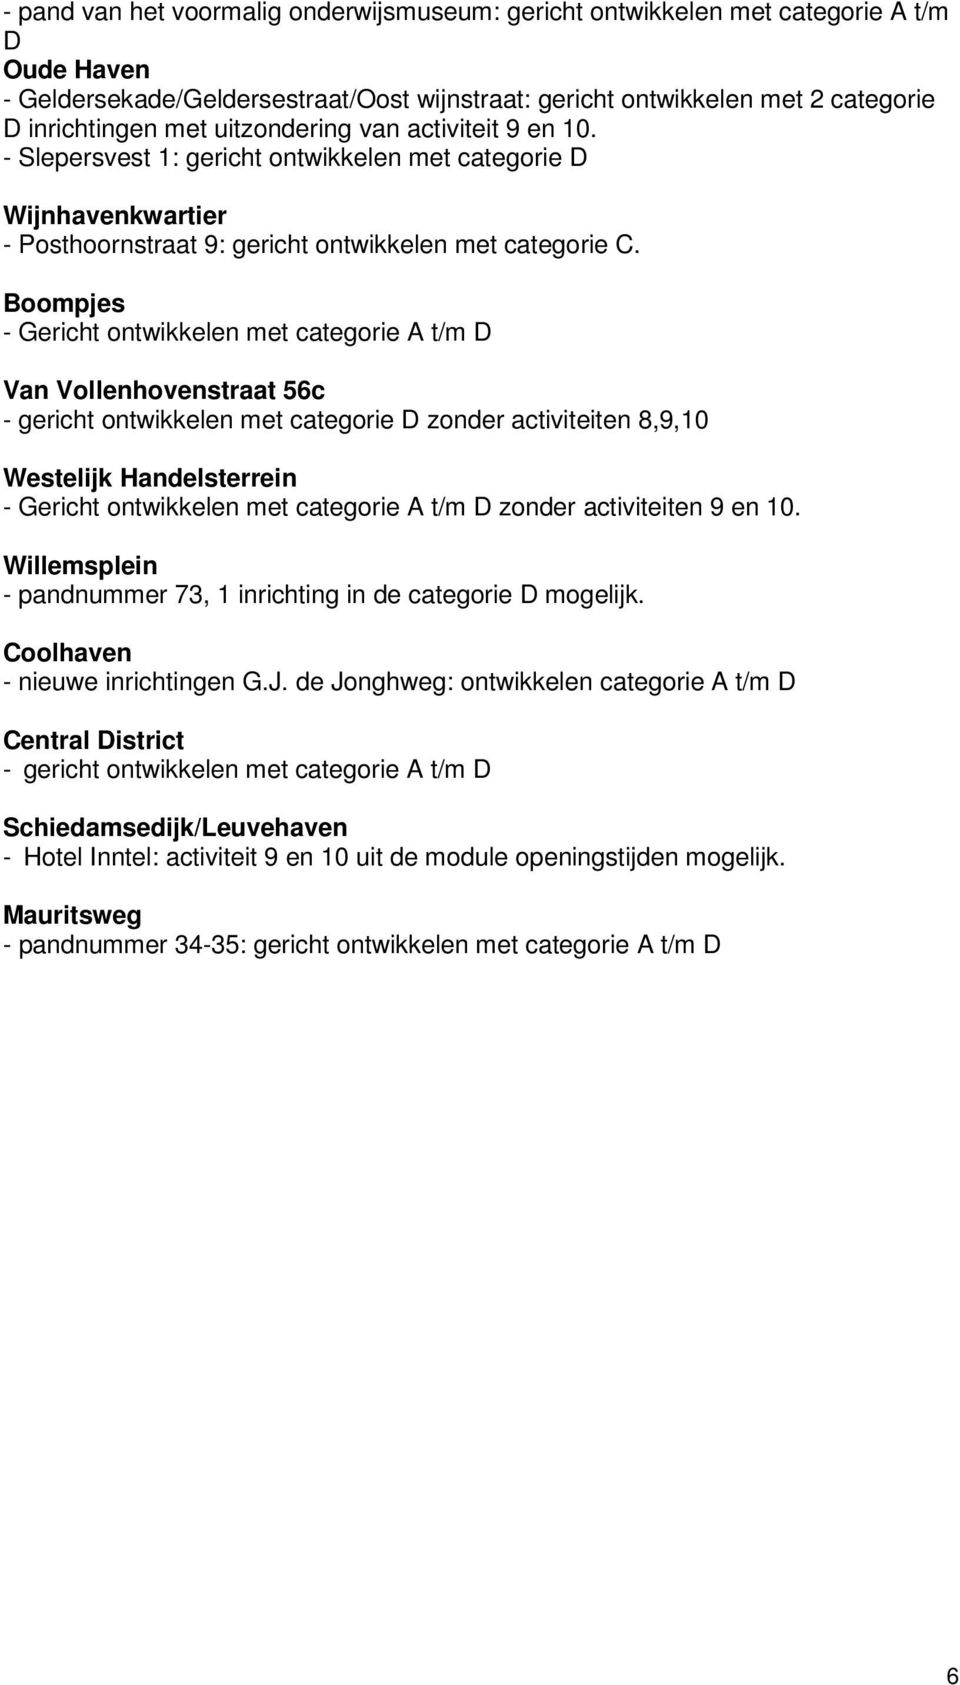 Boompjes - Gericht ontwikkelen met categorie A t/m D Van Vollenhovenstraat 56c - gericht ontwikkelen met categorie D zonder activiteiten 8,9,10 Westelijk Handelsterrein - Gericht ontwikkelen met